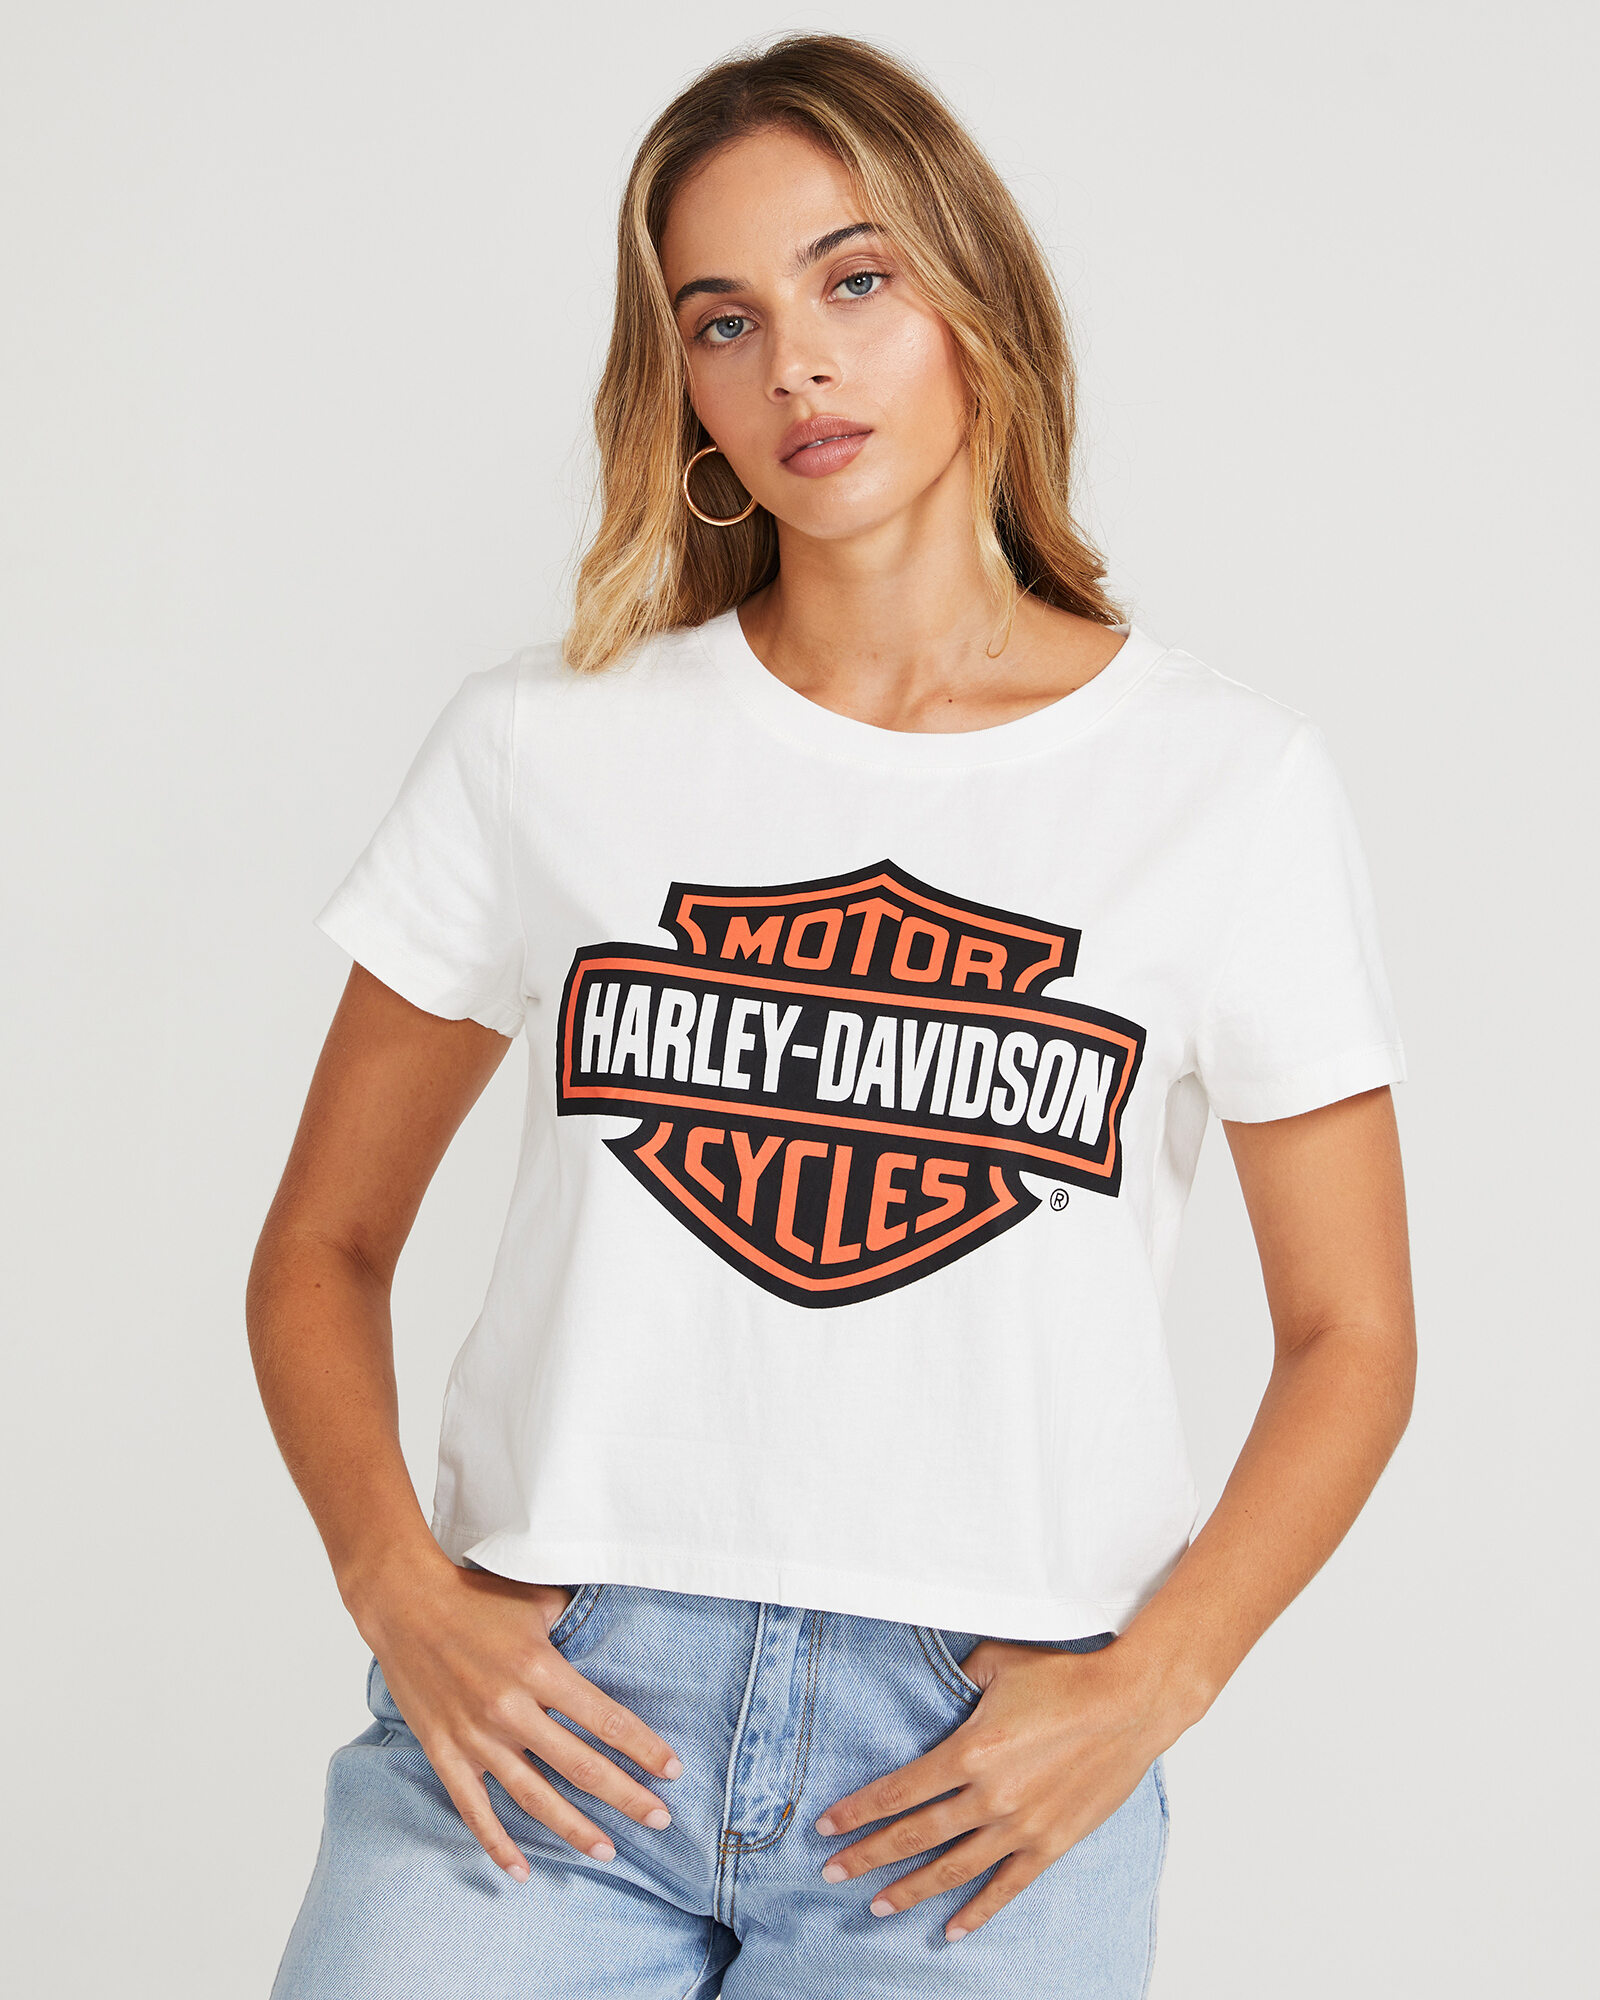 Harley Davidson Crop Bar And Shield T Shirt White Short Sleeve T Shirts T Shirts T Shirts Singlets Clothing Shop Womens General Pants Co